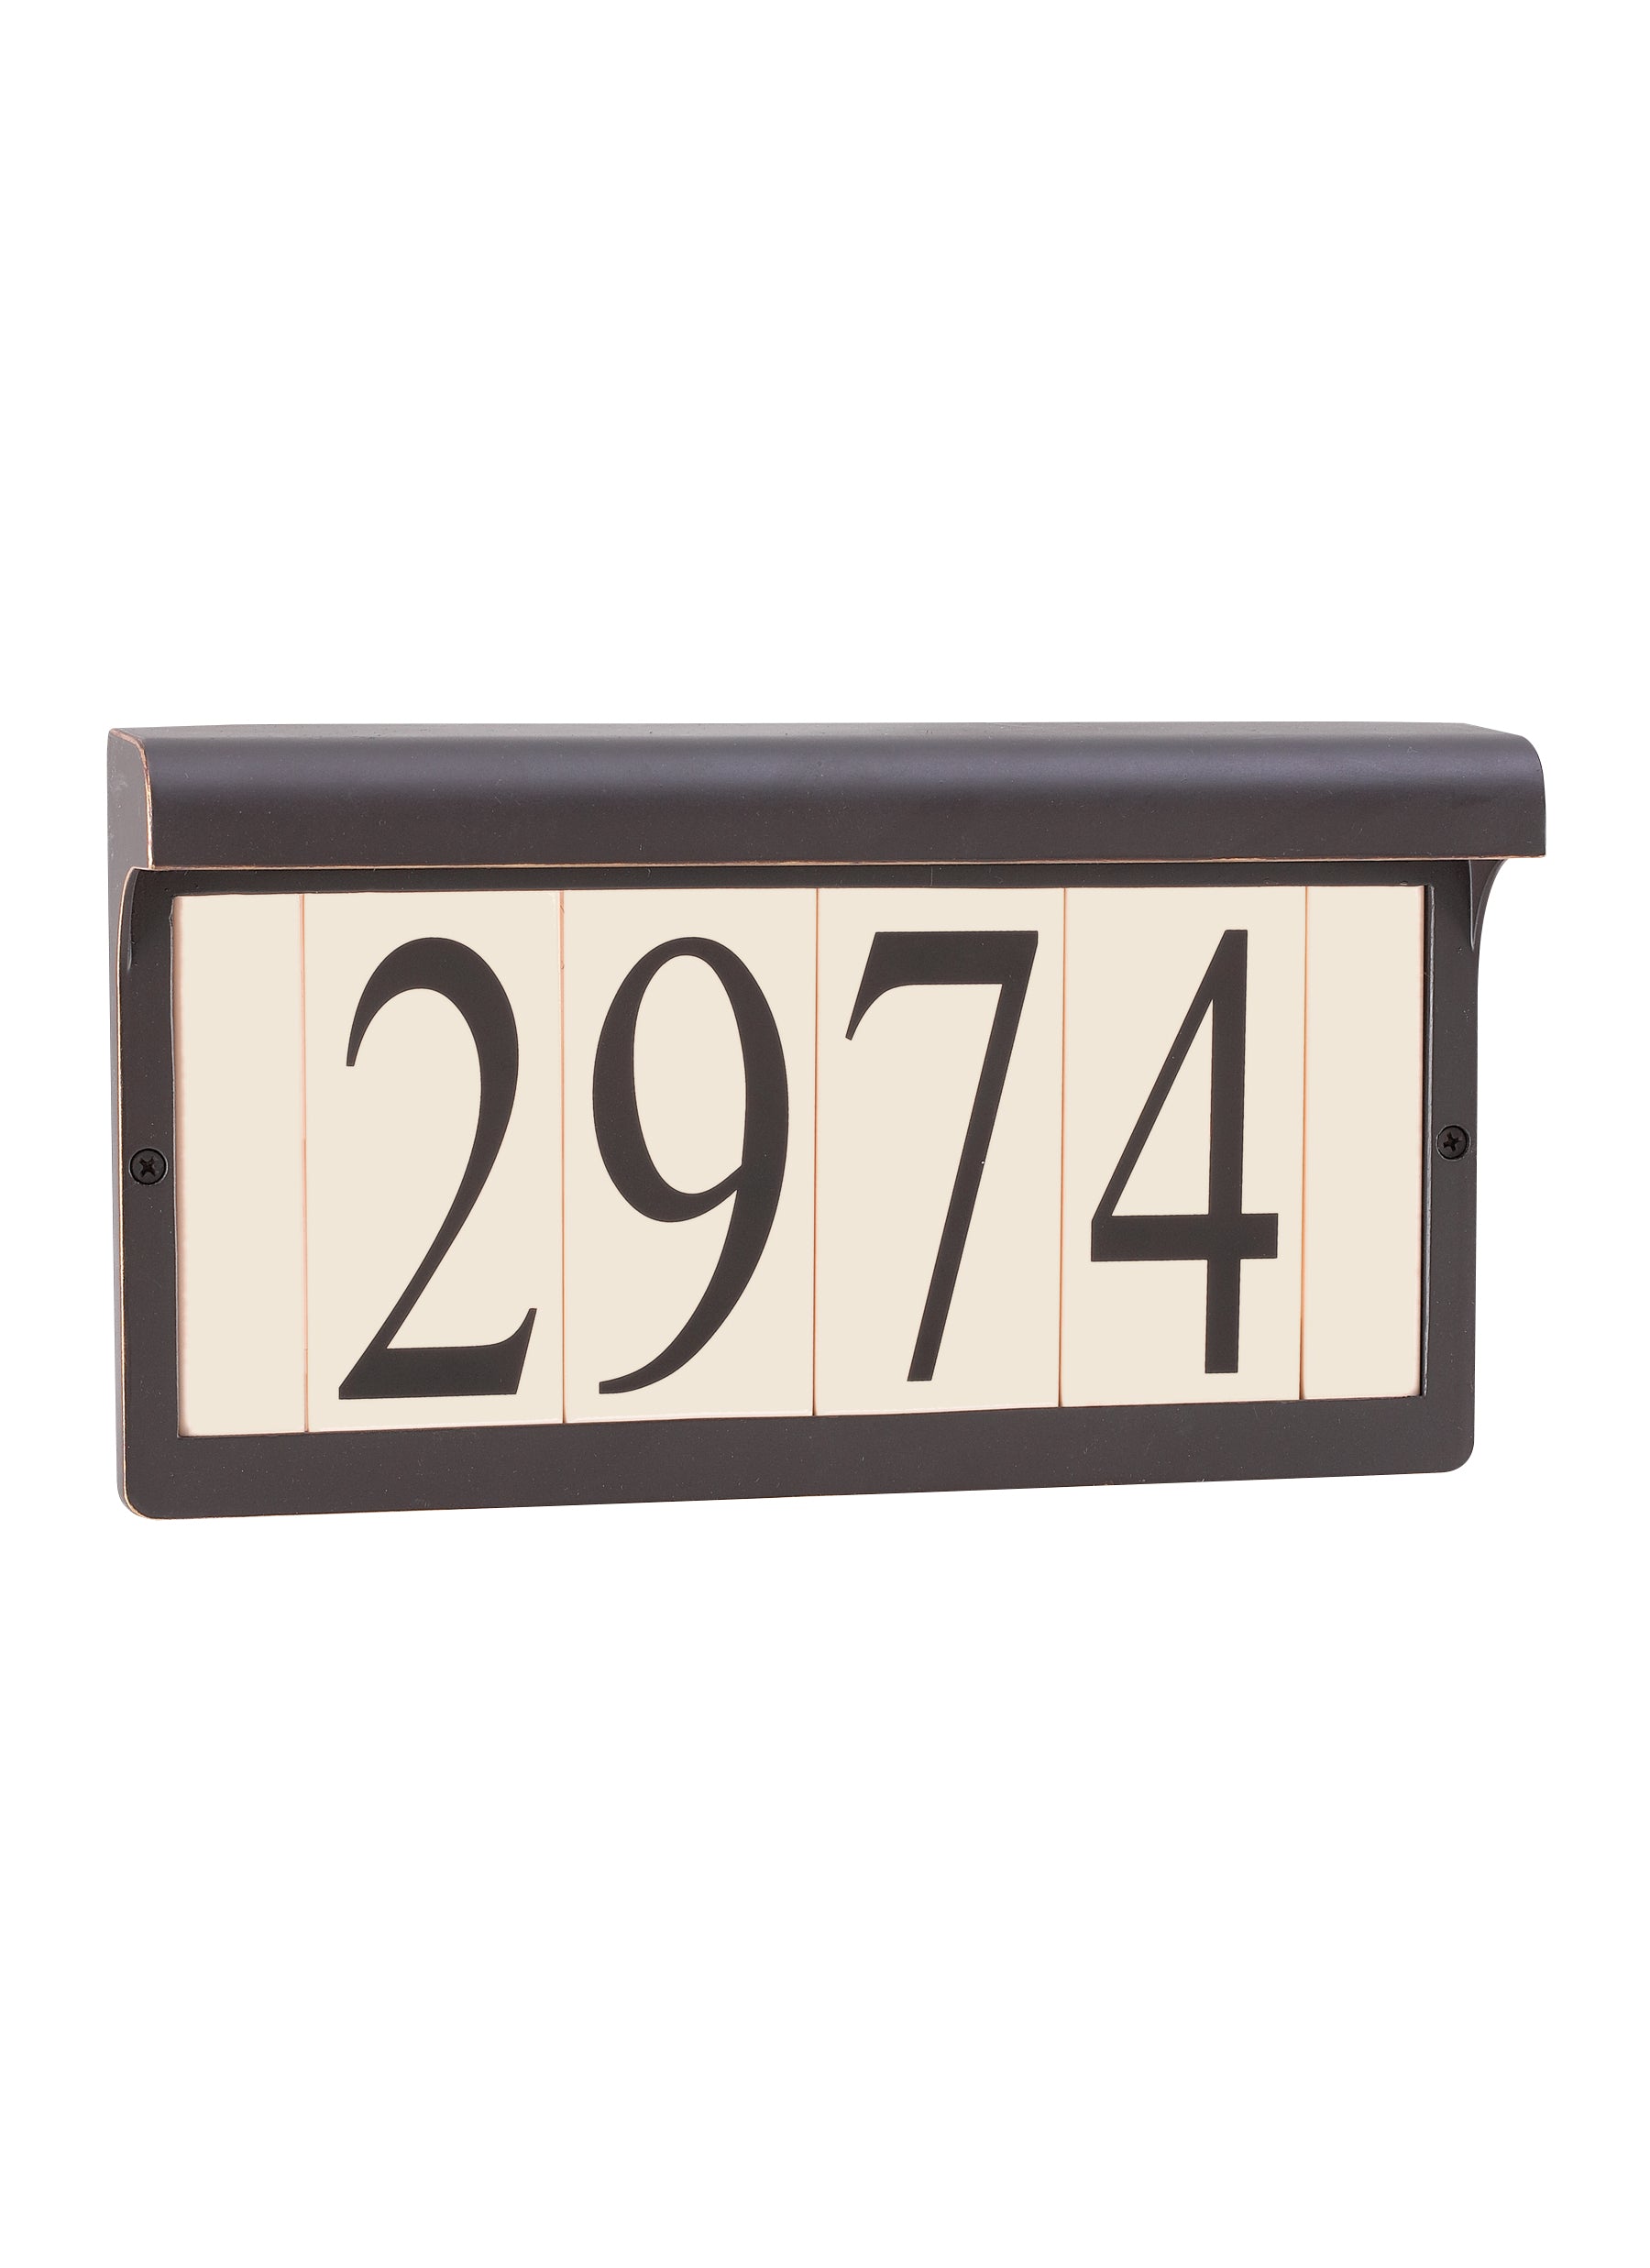 Address light collection antique bronze aluminum address sign light fixture